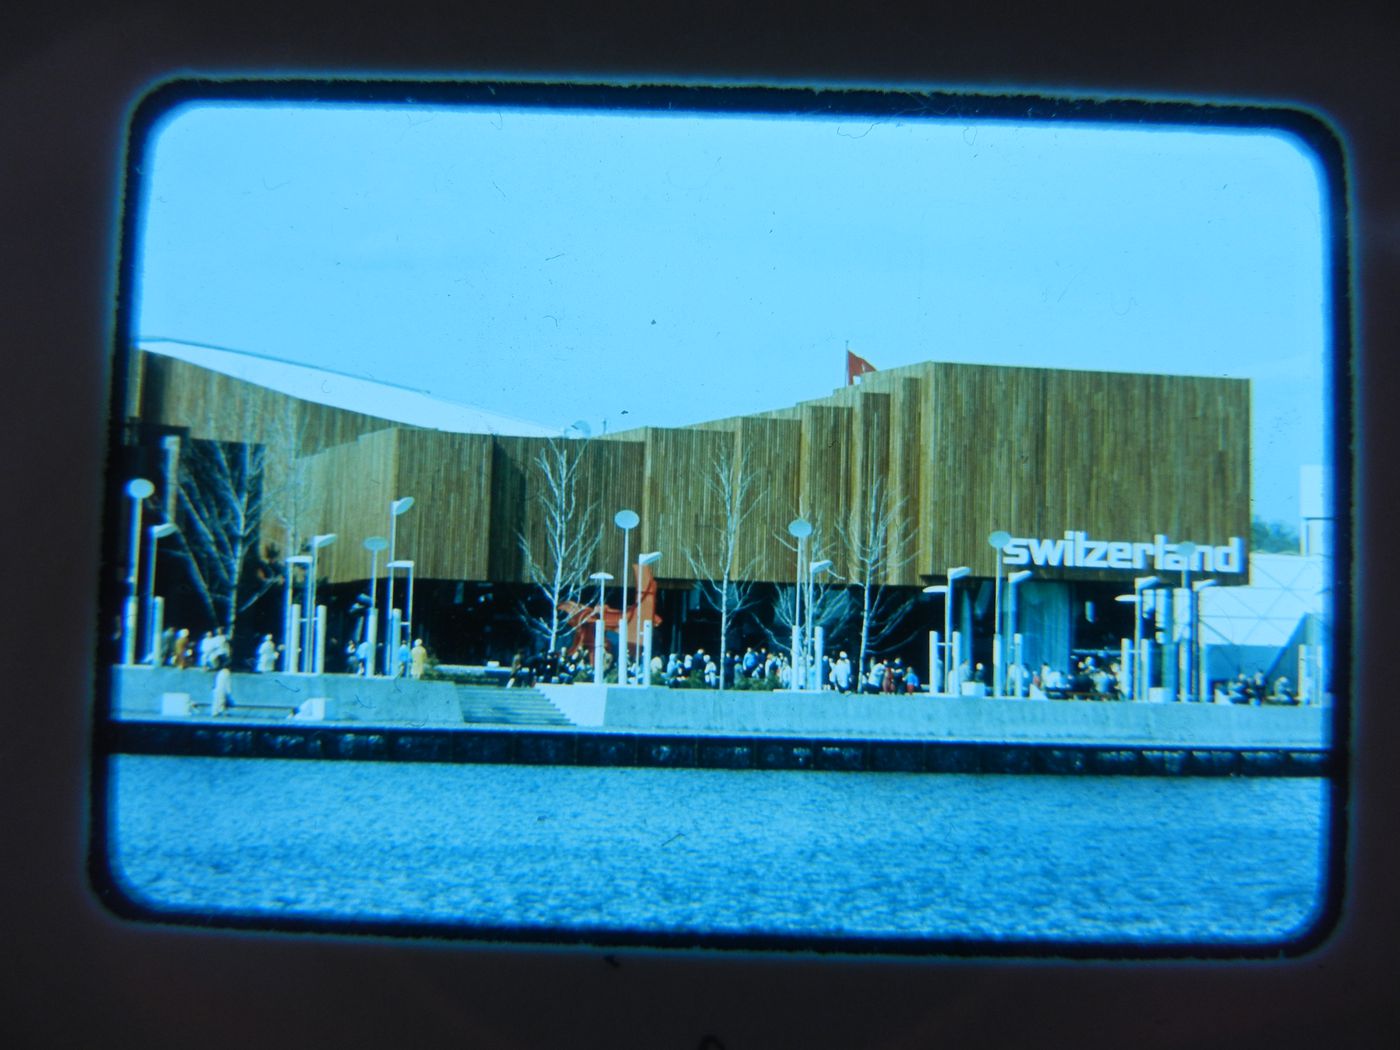 View of the Swiss Pavilion, Expo 67, Montréal, Québec